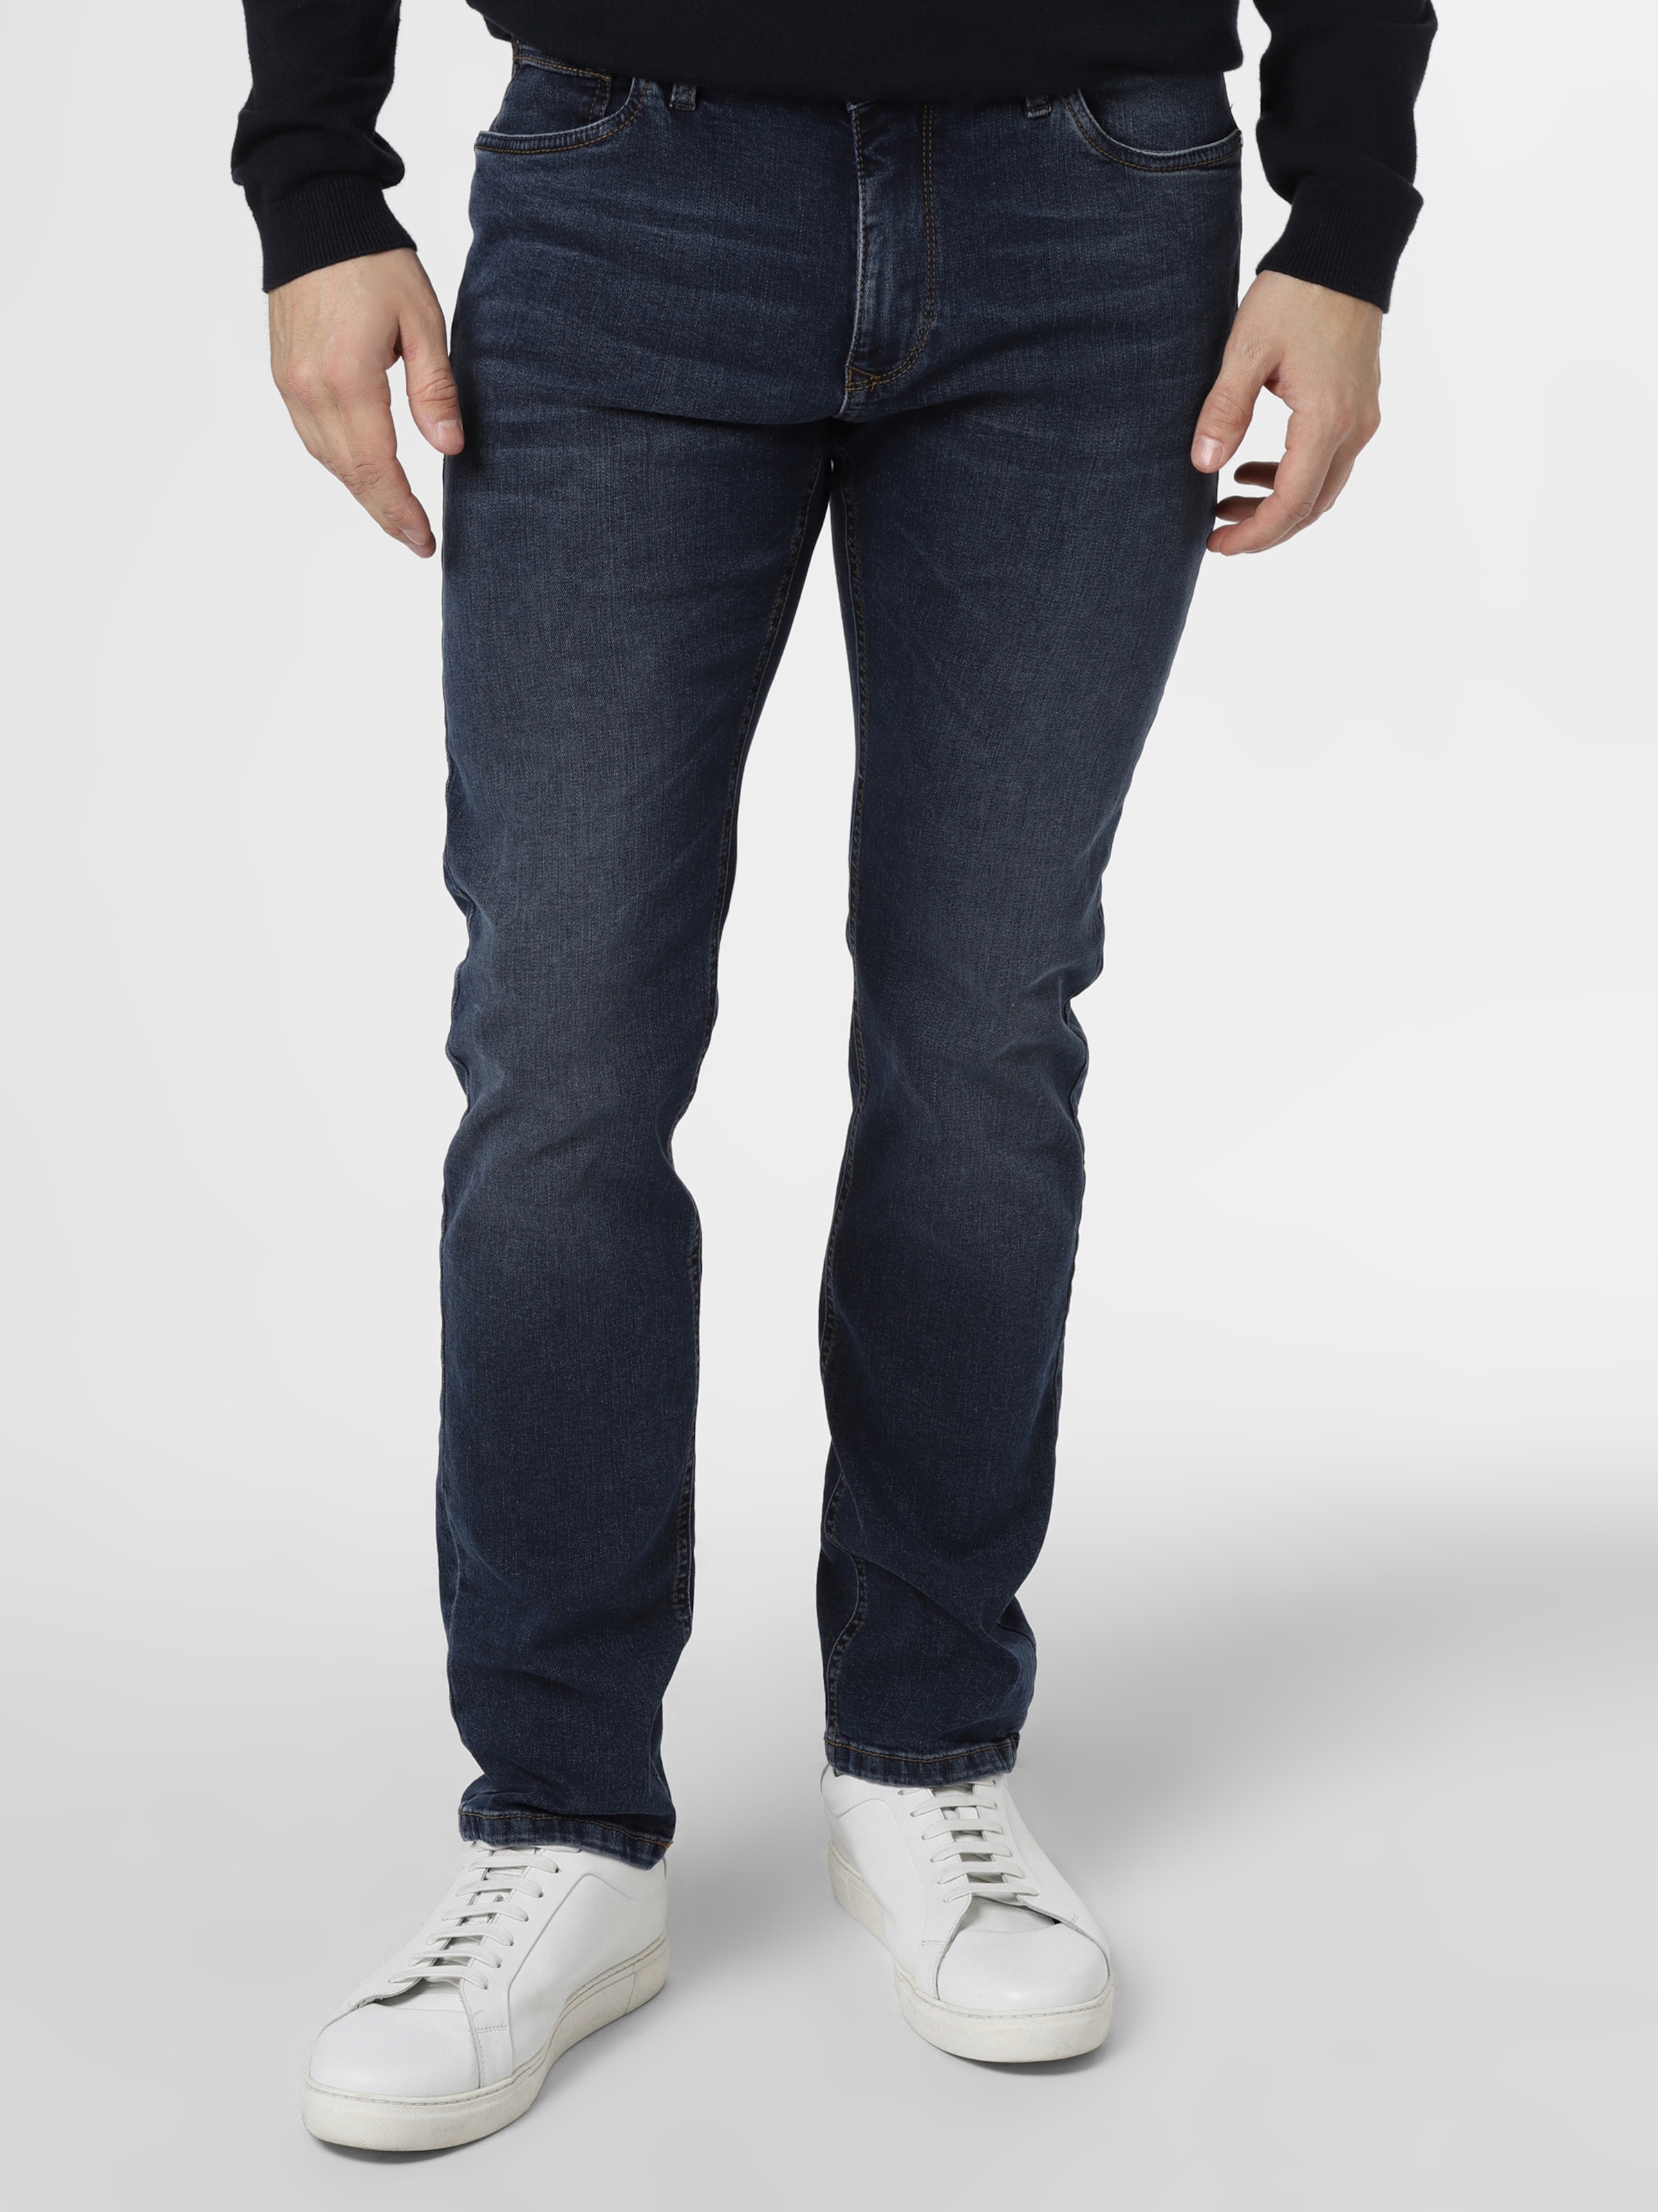 Männer Große Größen Finshley & Harding Jeans in Blau - VK38896